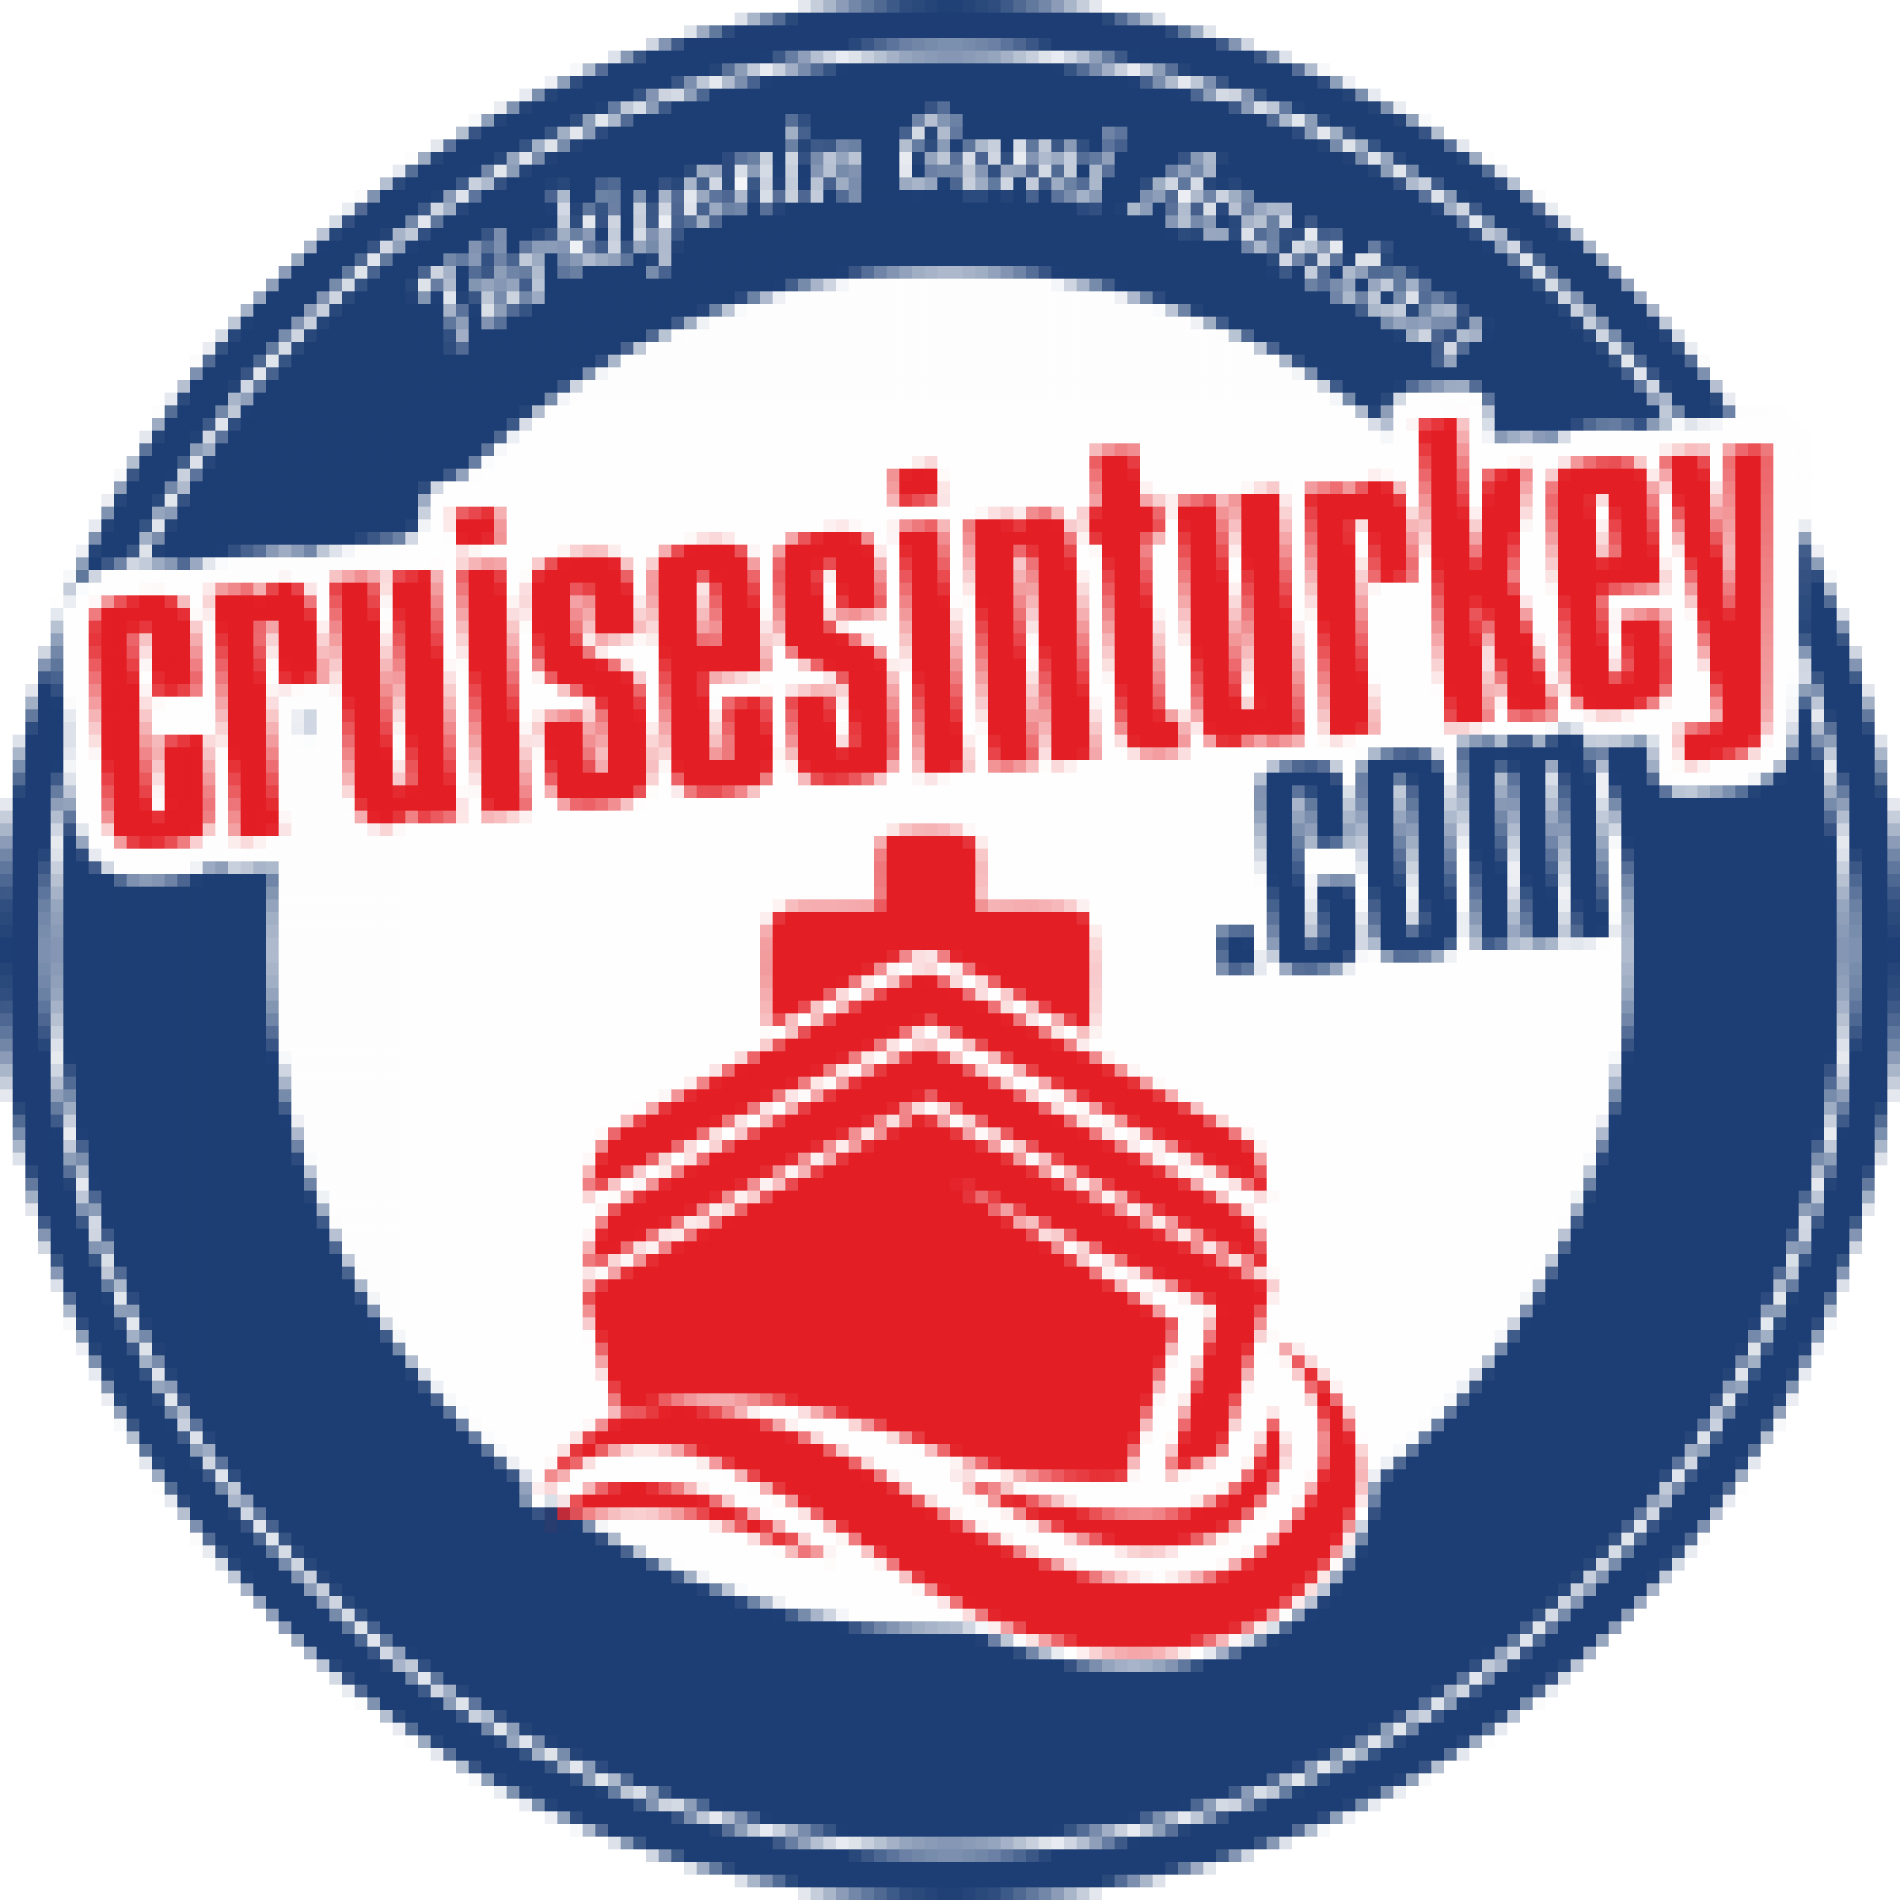 Cruisesinturkey.net